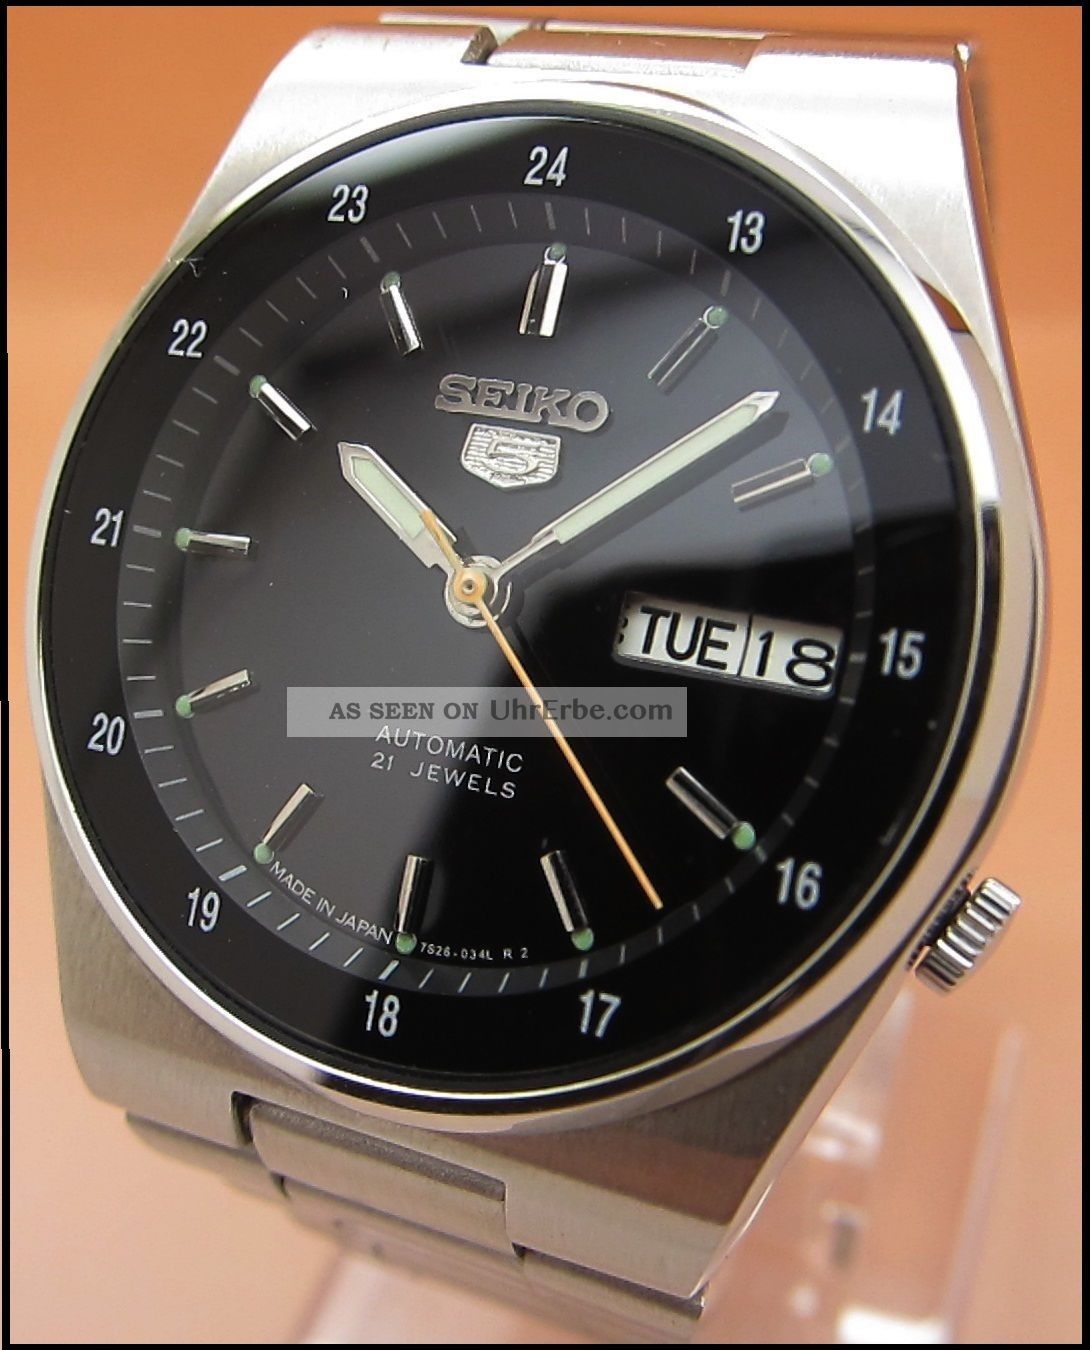 Seiko Snkg23 Automatik Uhr Armbanduhr 7s26 - 02c0 21 Retro Vintage Armbanduhren Bild